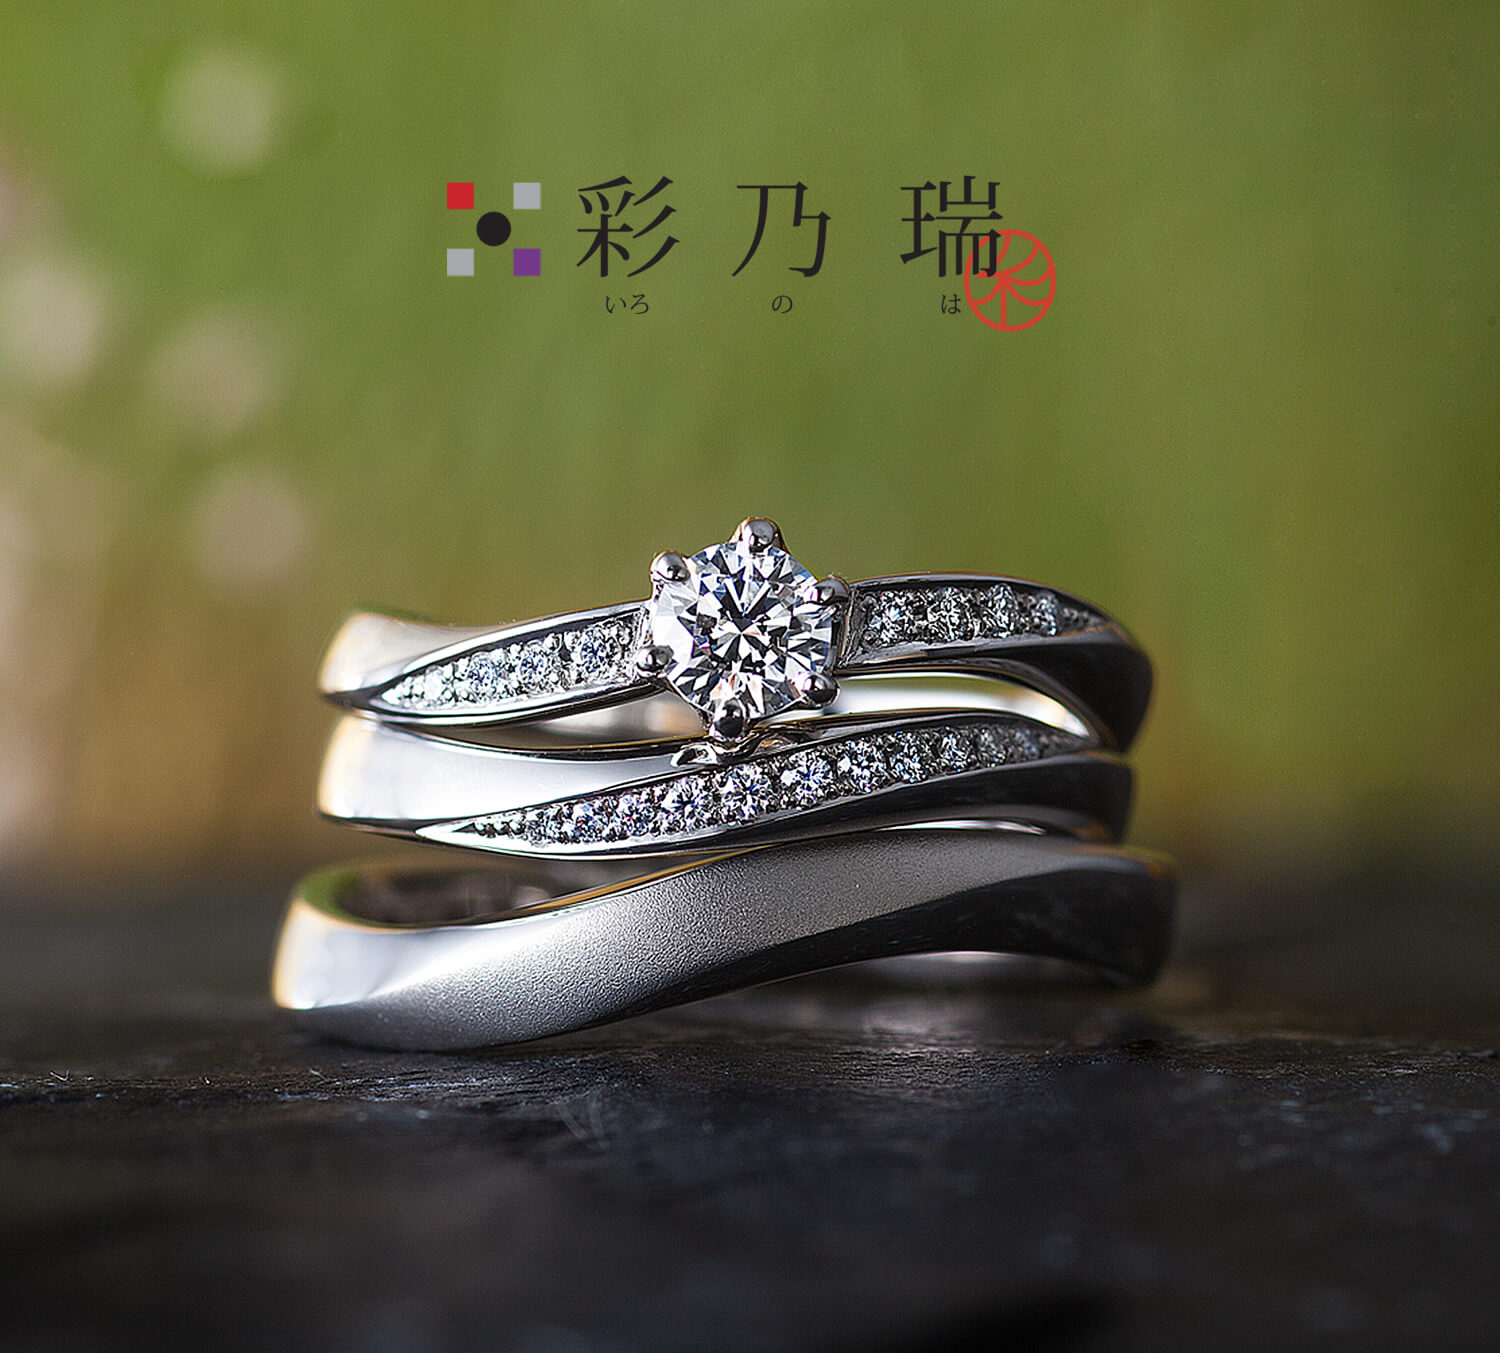 彩乃瑞いろのはの婚約指輪と結婚指輪